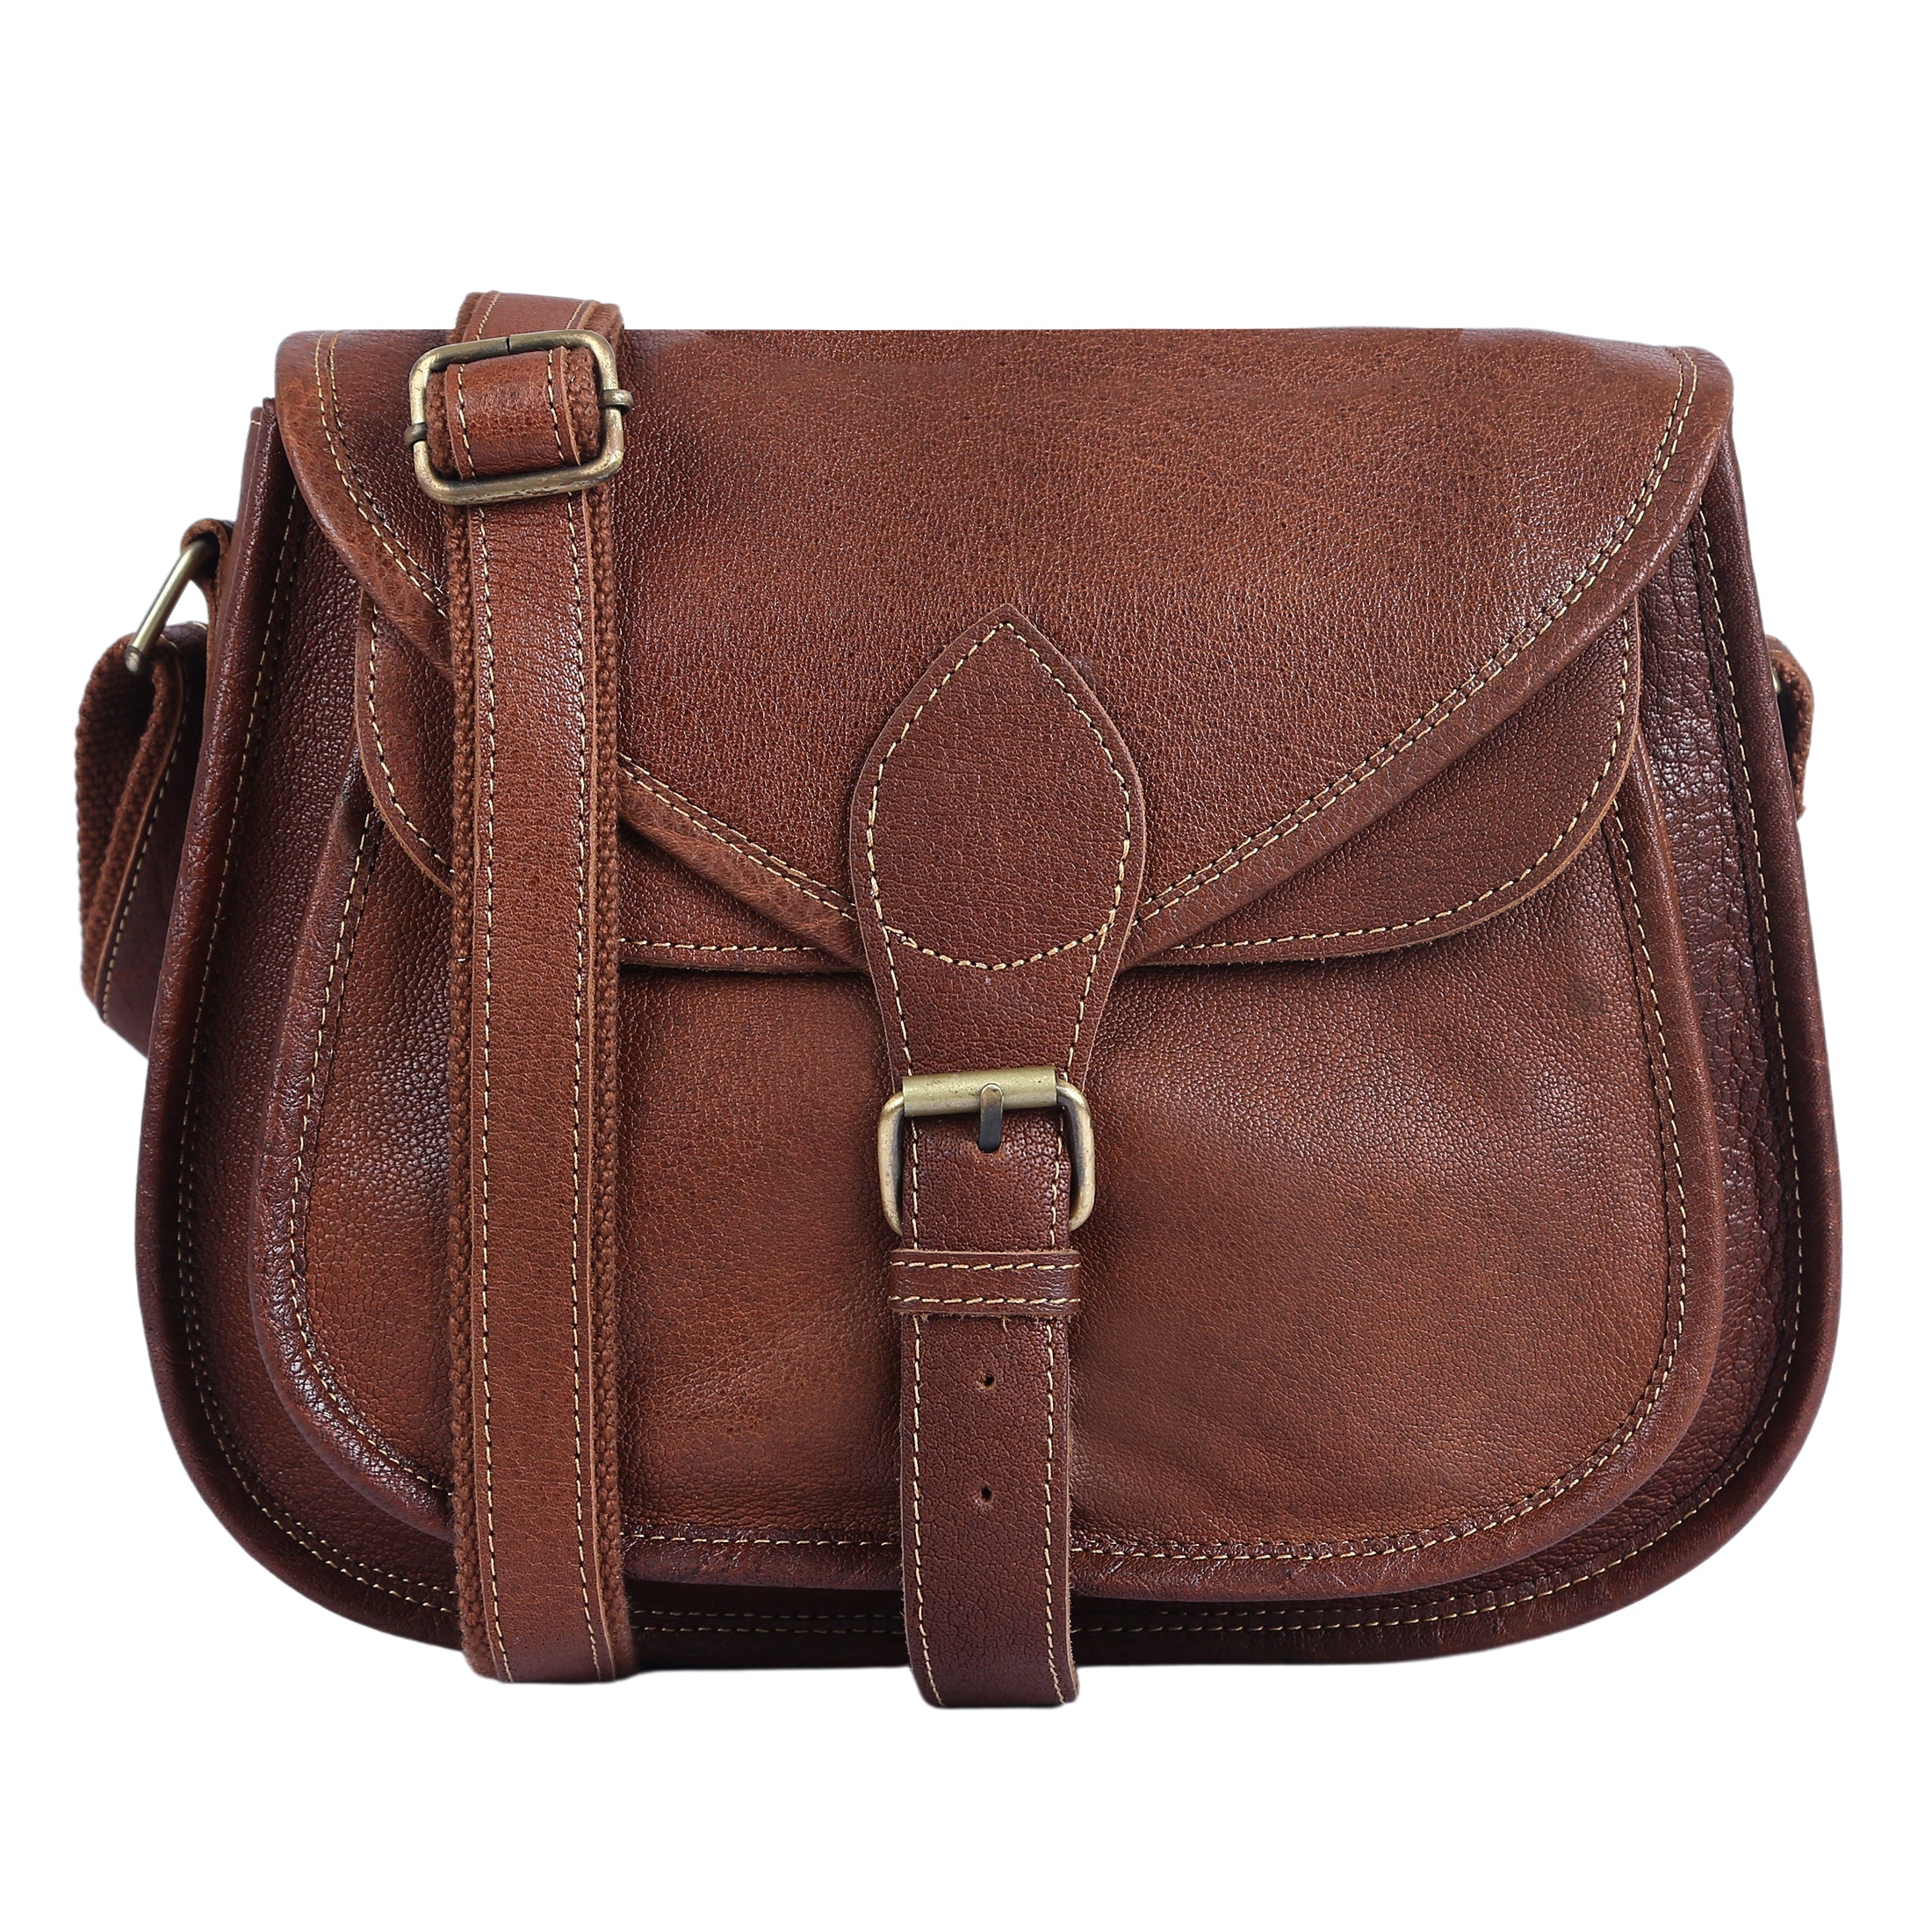 Leather Messenger Bag Tan Shoulder Bag Leather Travel Purse 